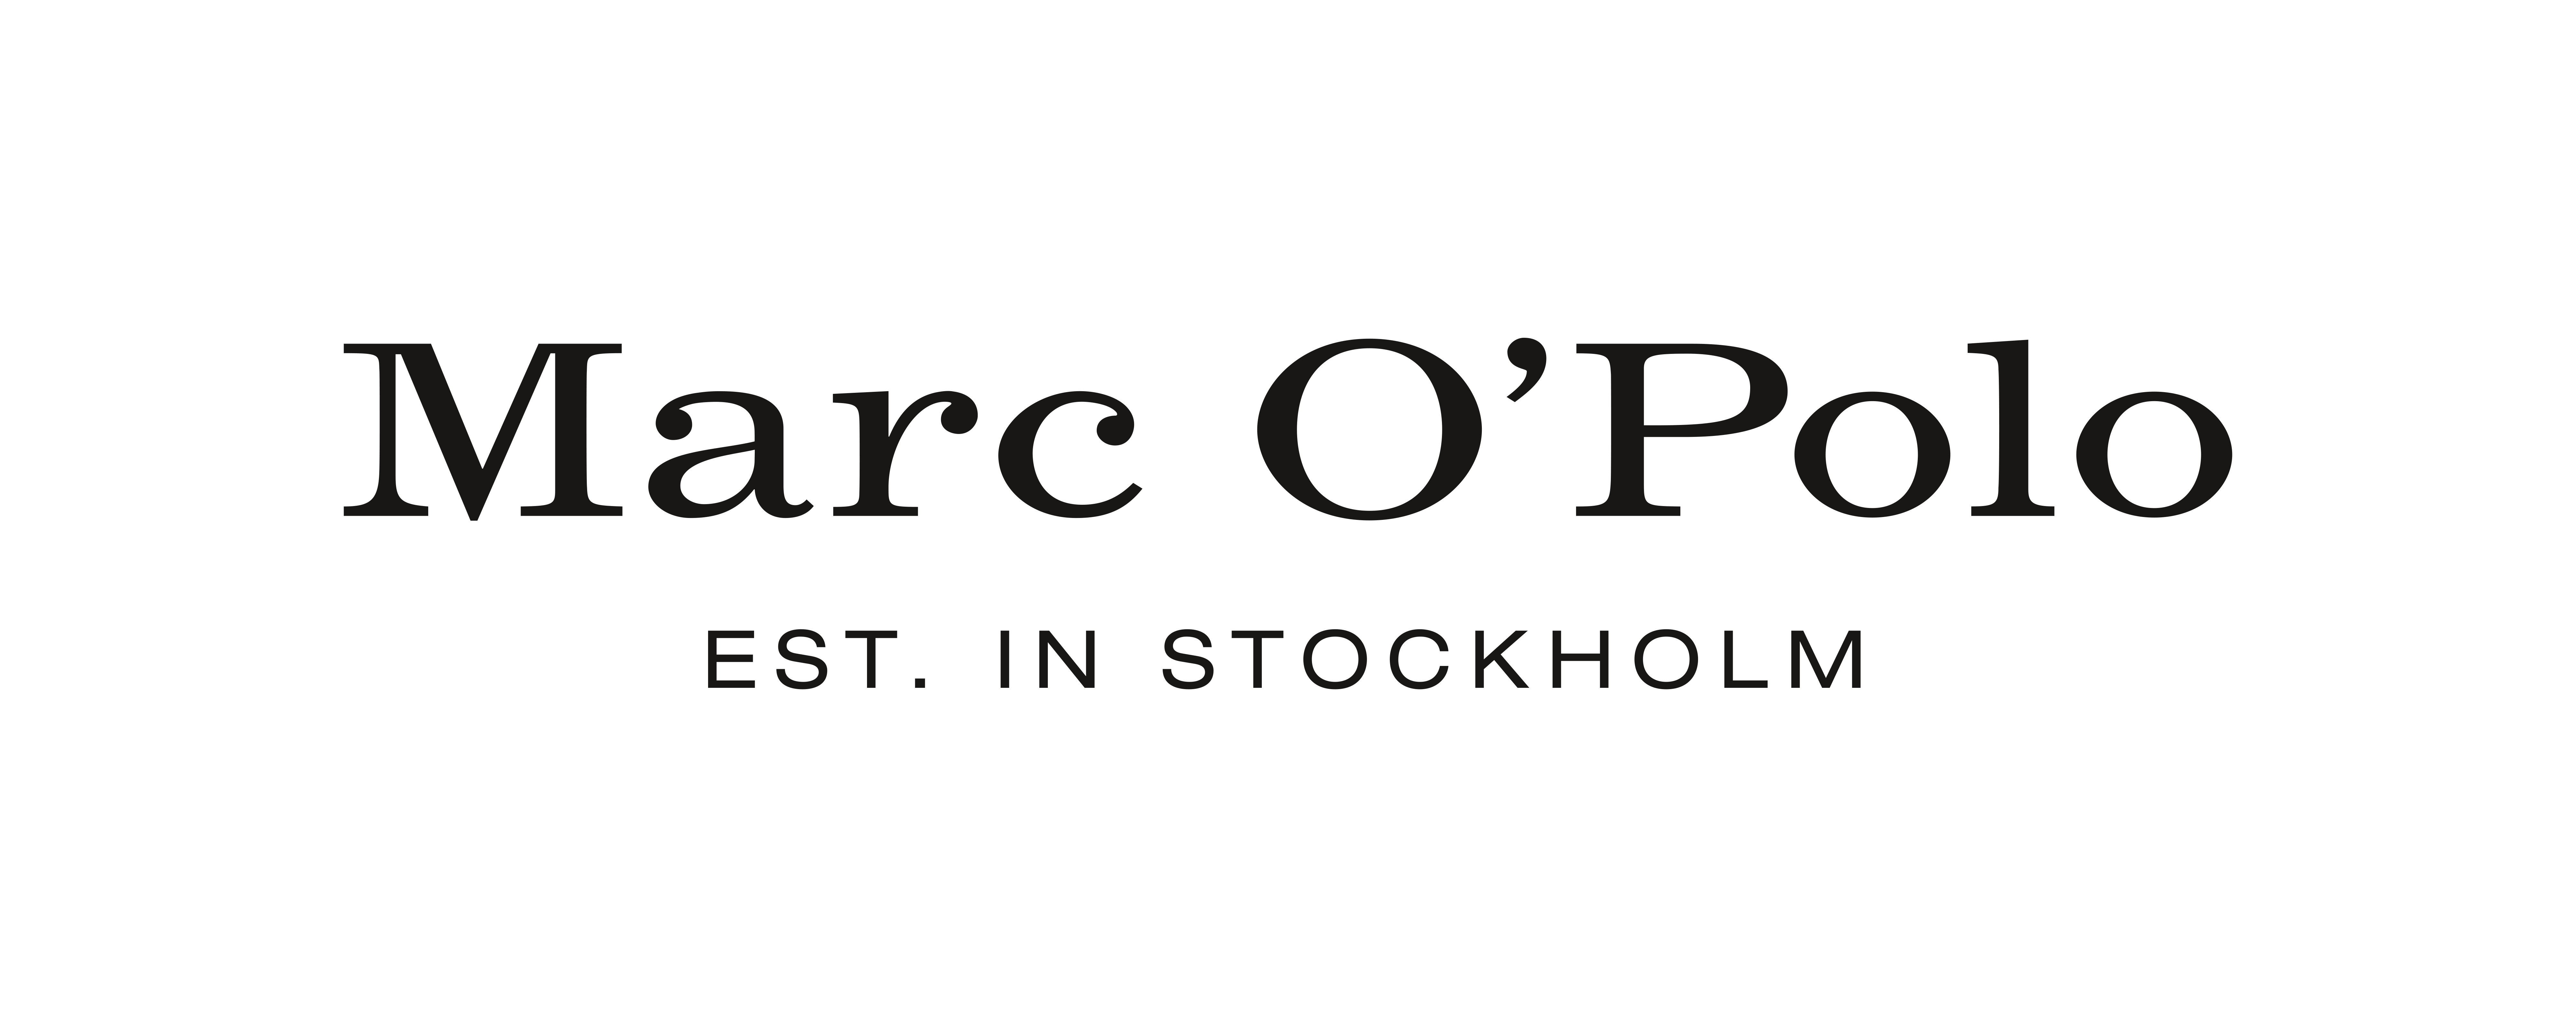 Markenlogo für Marc O'Polo